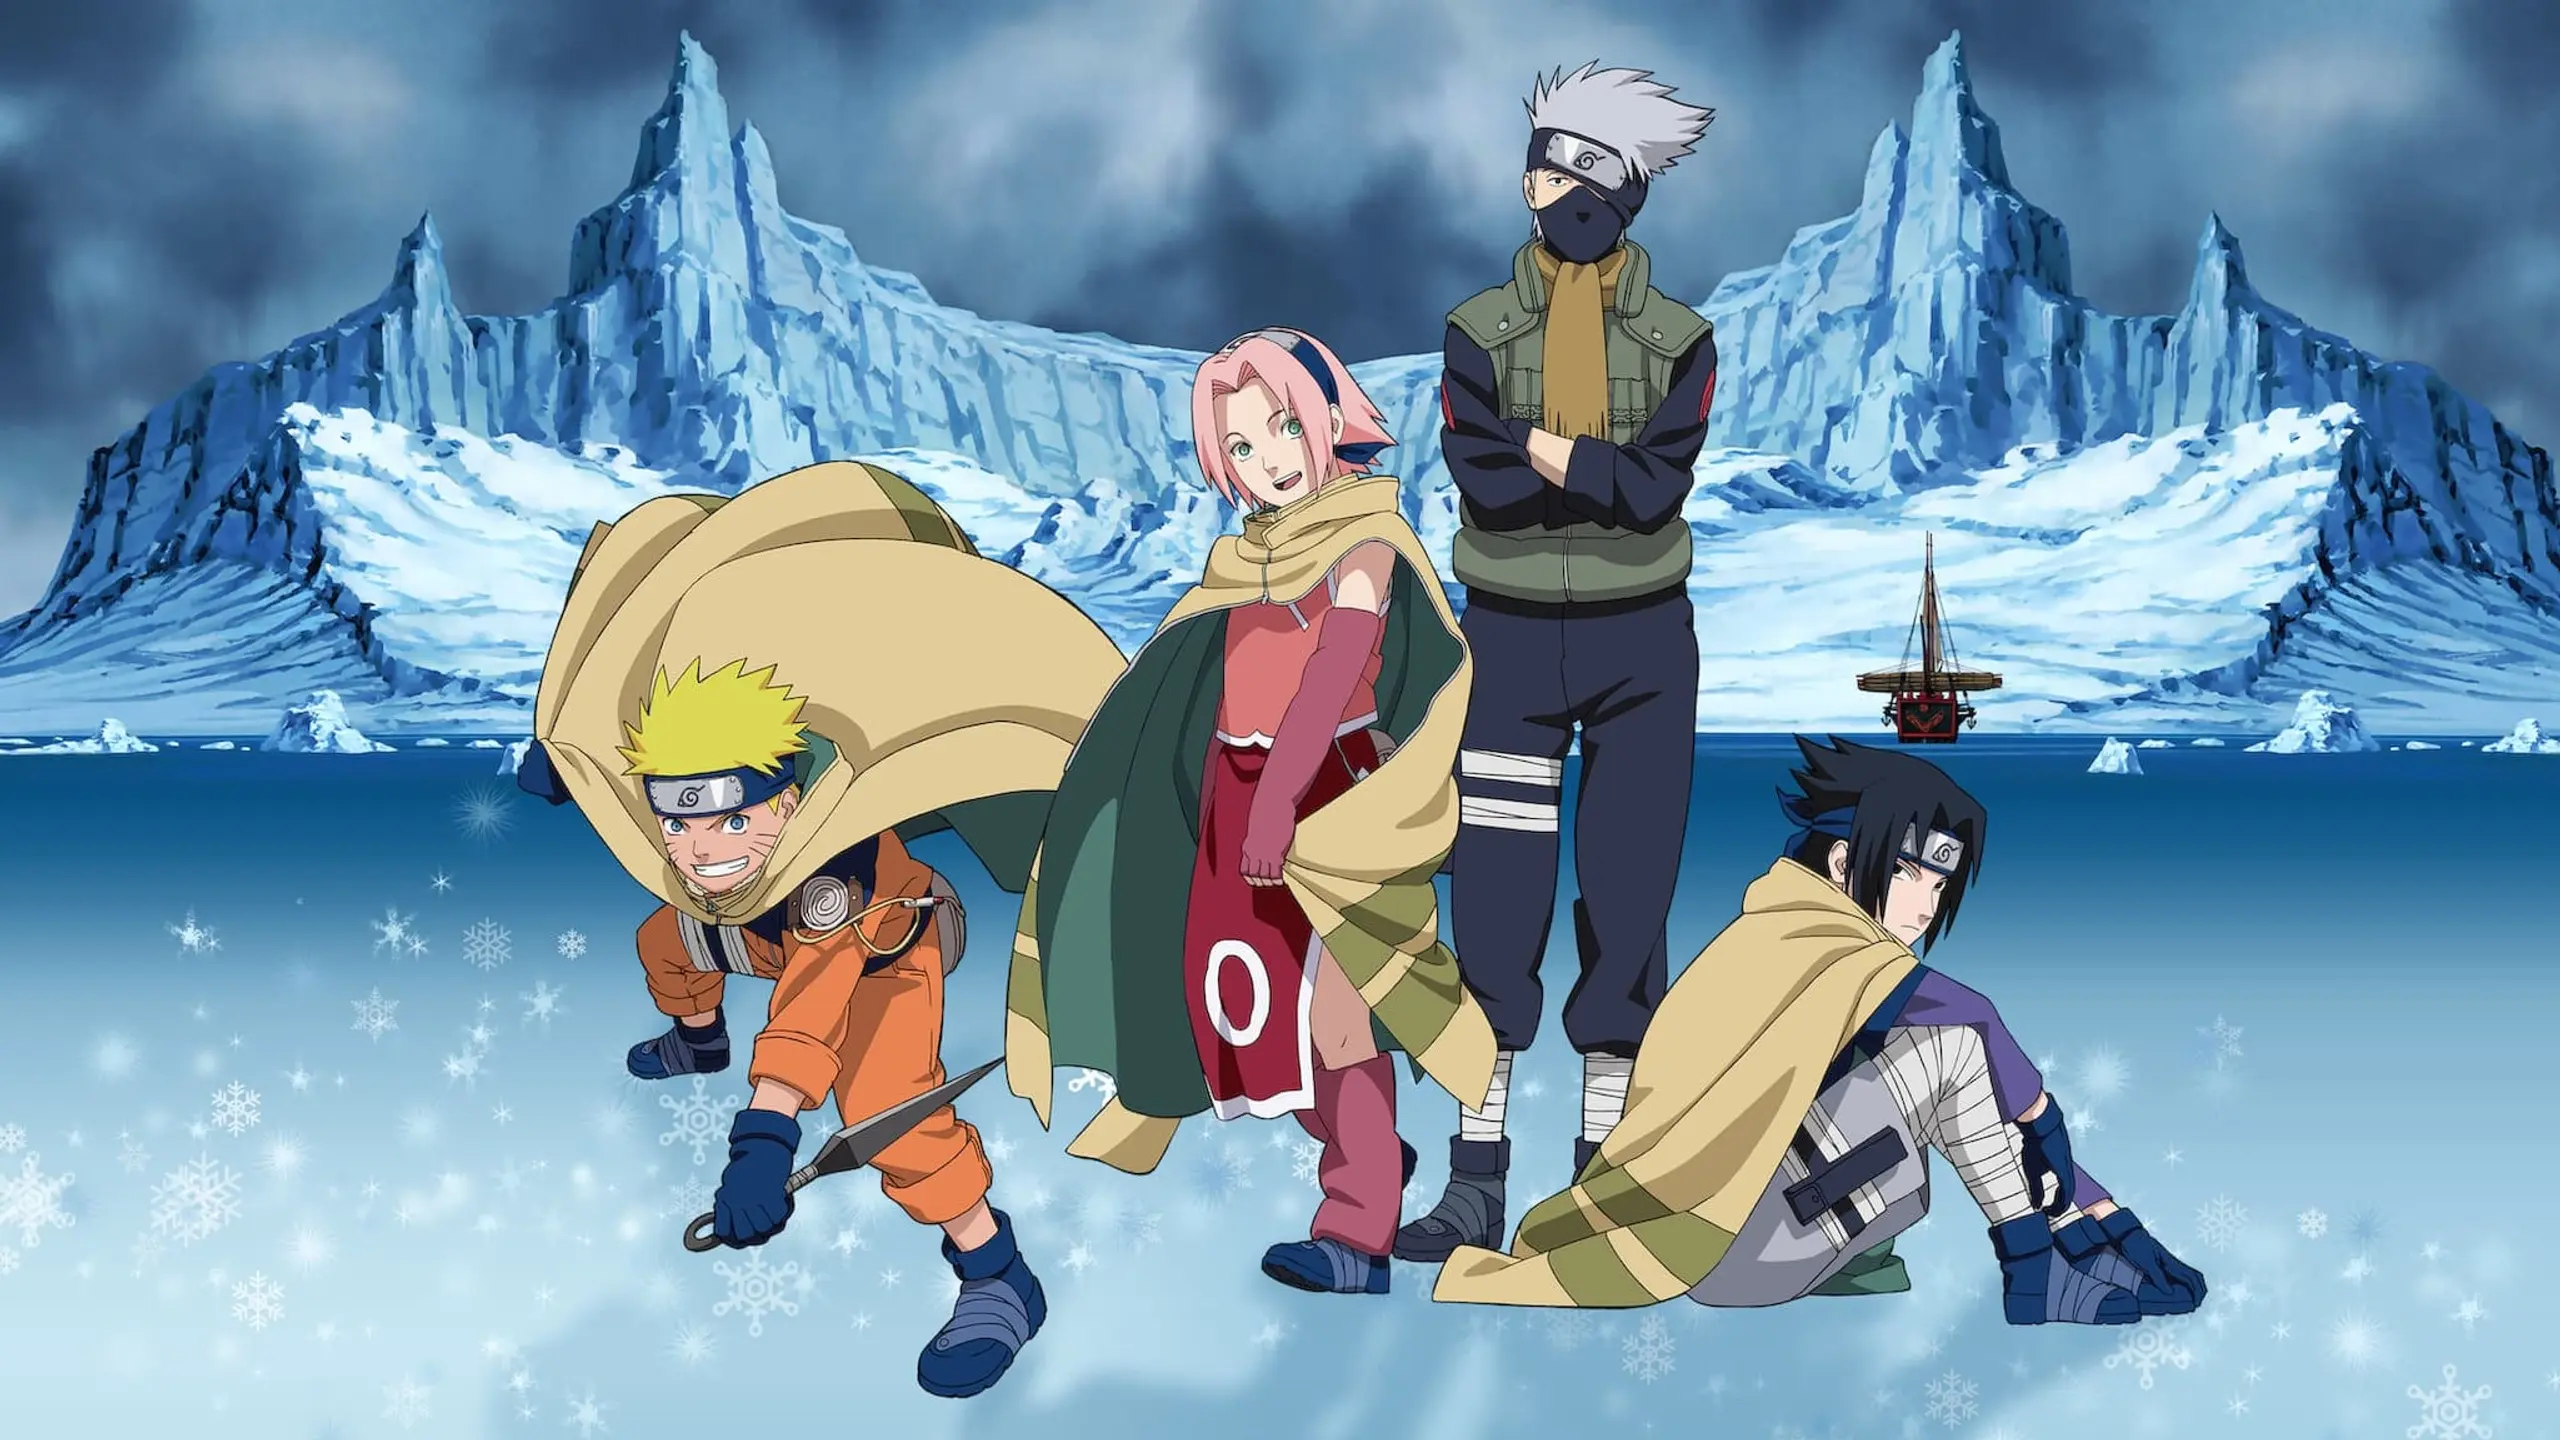 Naruto - The Movie - Geheimmission im Land des ewigen Schnees